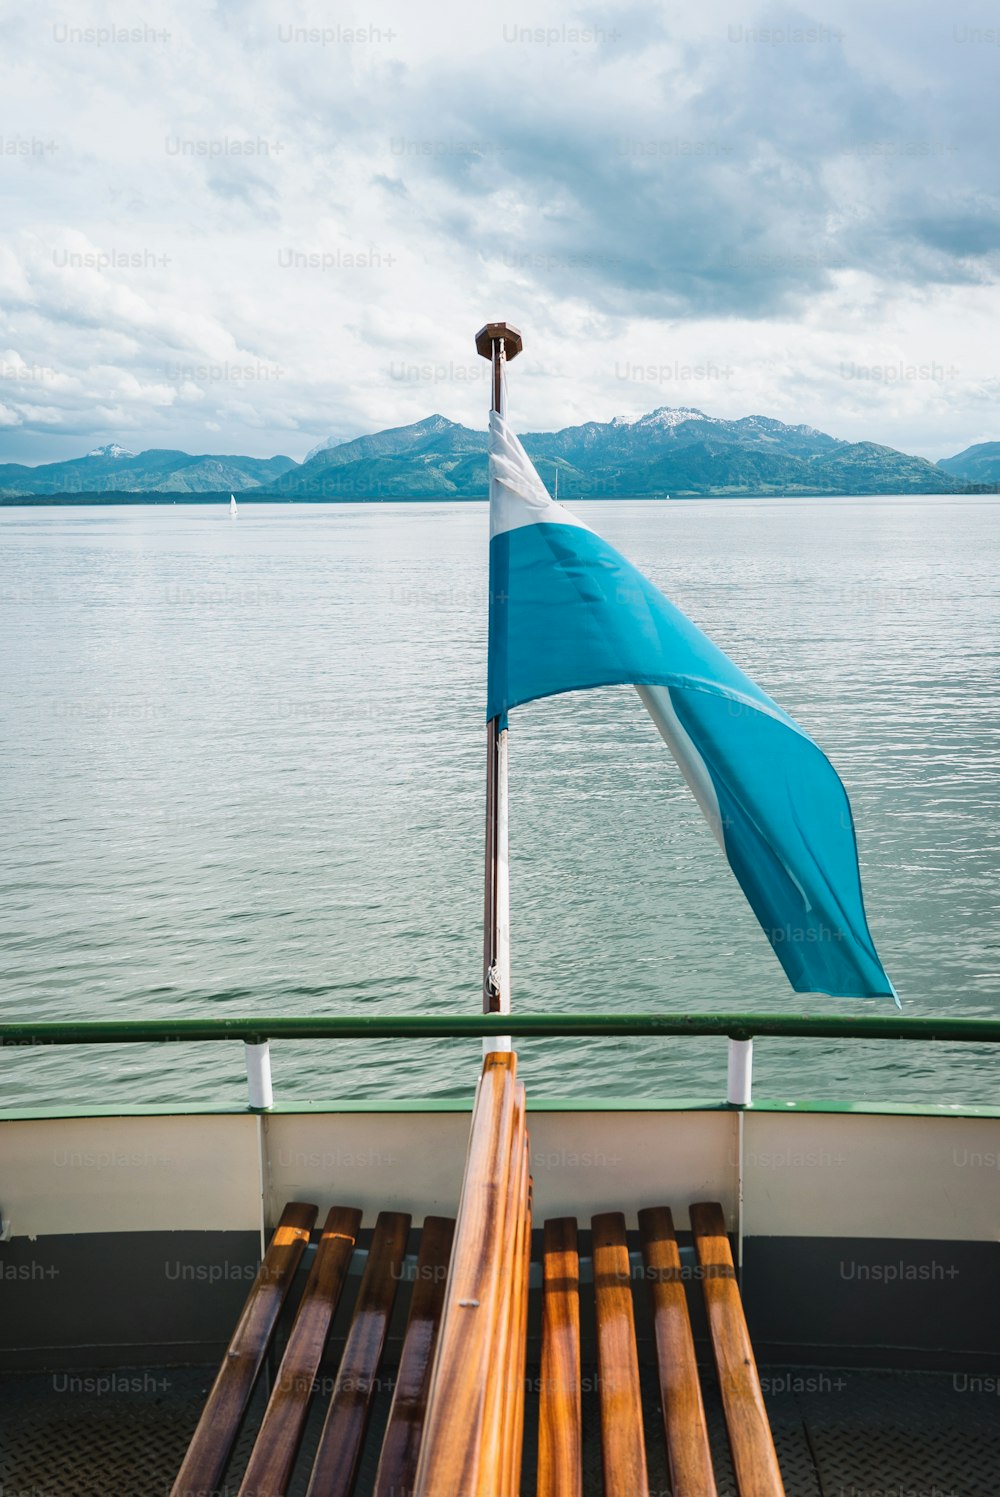 Un drapeau bleu et blanc sur un bateau dans l’eau